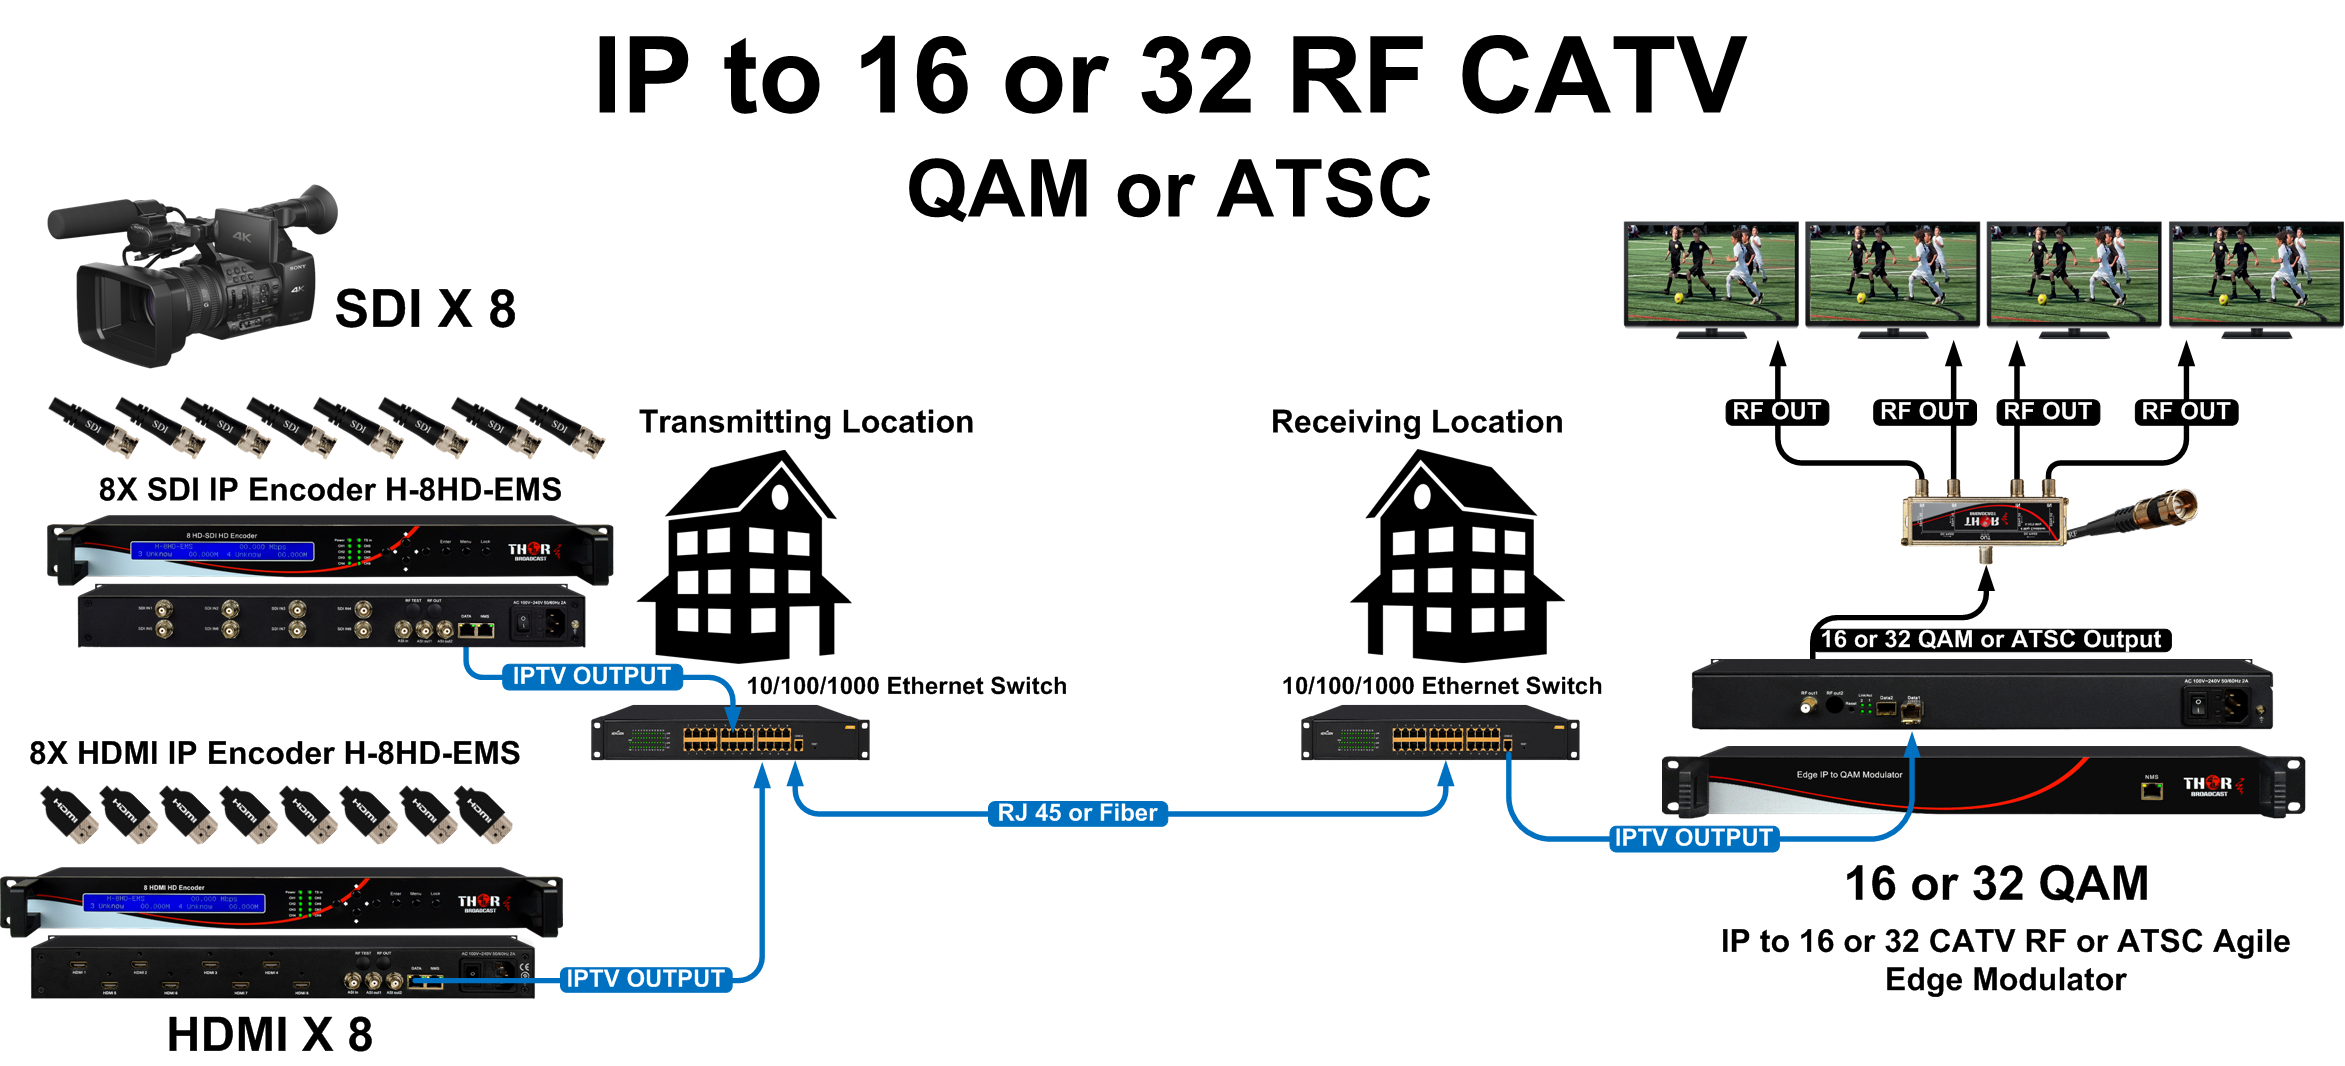 FMUSER FUTV4622 DVB-T MPEG-4 AVC / H.264 Modulador codificador HD ( sintonizador, entrada HDMI; salida RF) con actualización USB para uso  doméstico